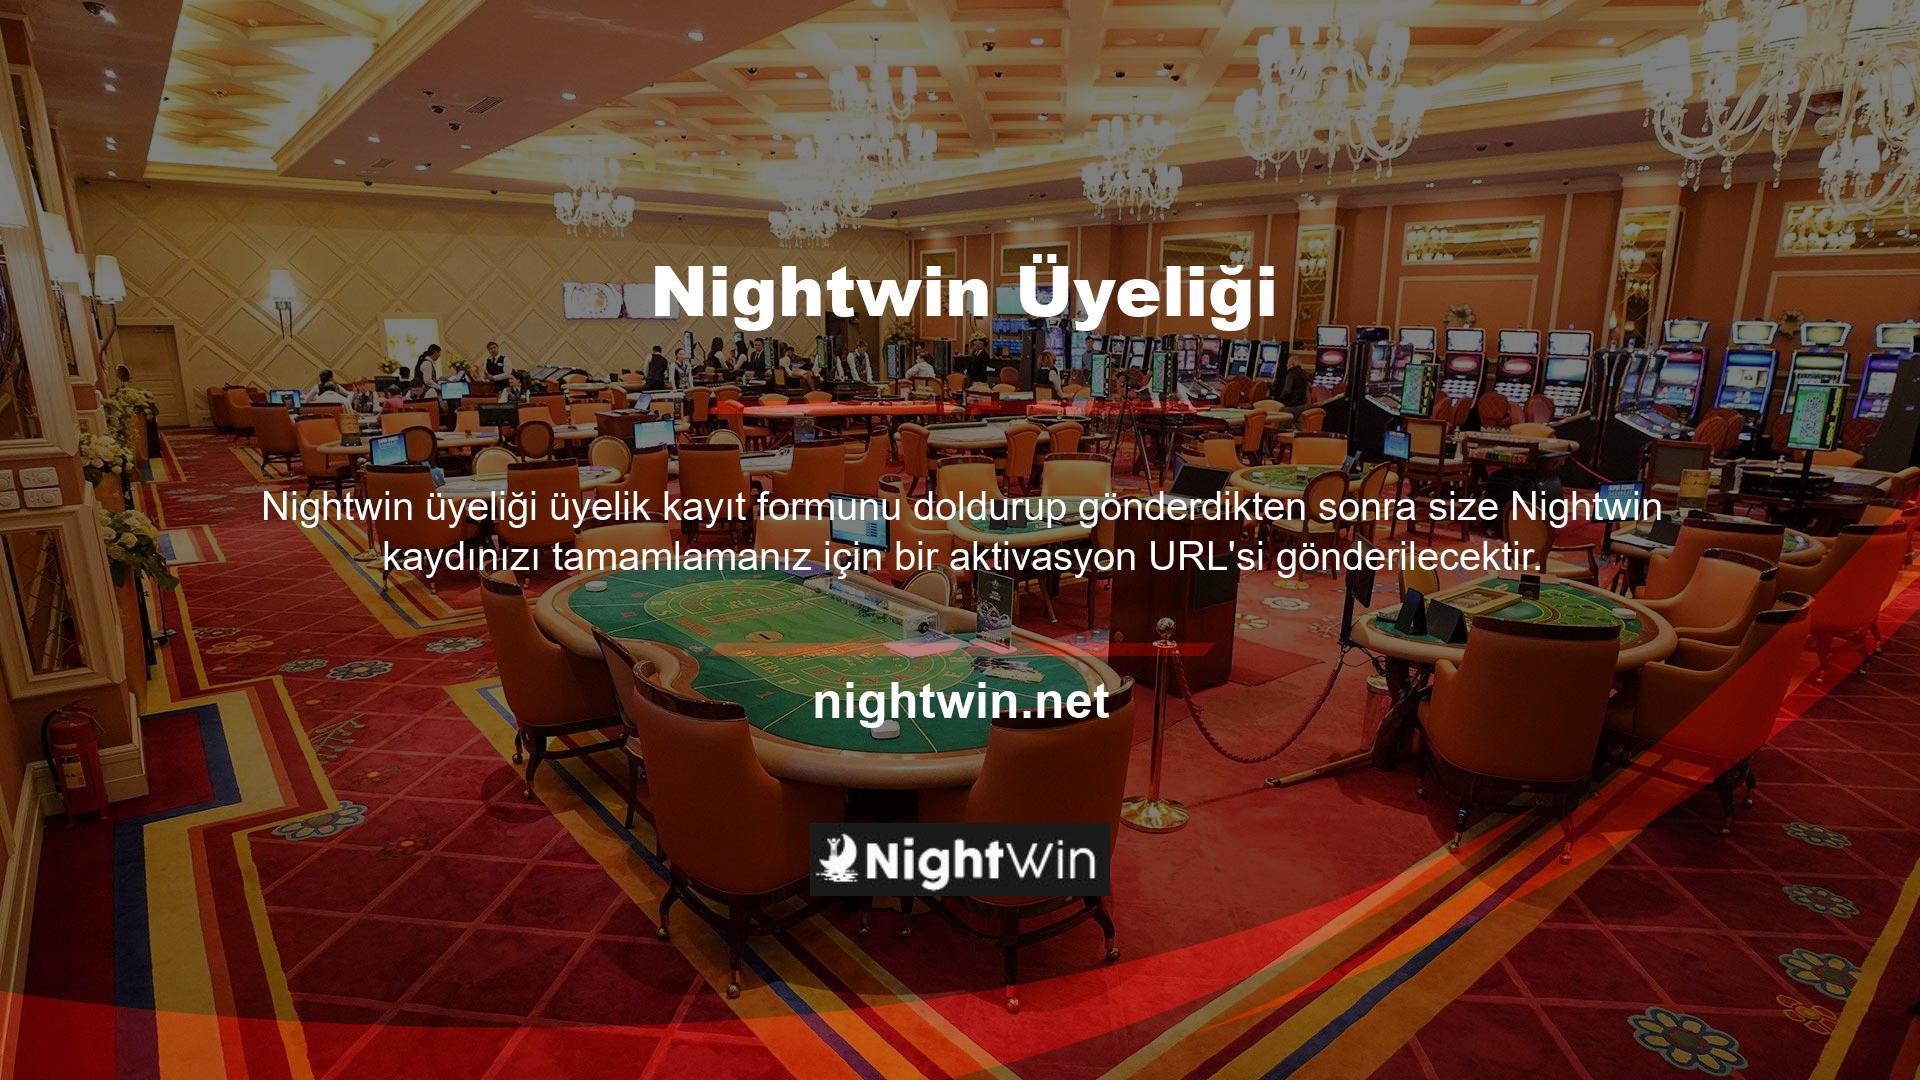 Aktivasyon URL'si, Nightwin web sitesine giriş yapmak için kullandığınız URL'dir